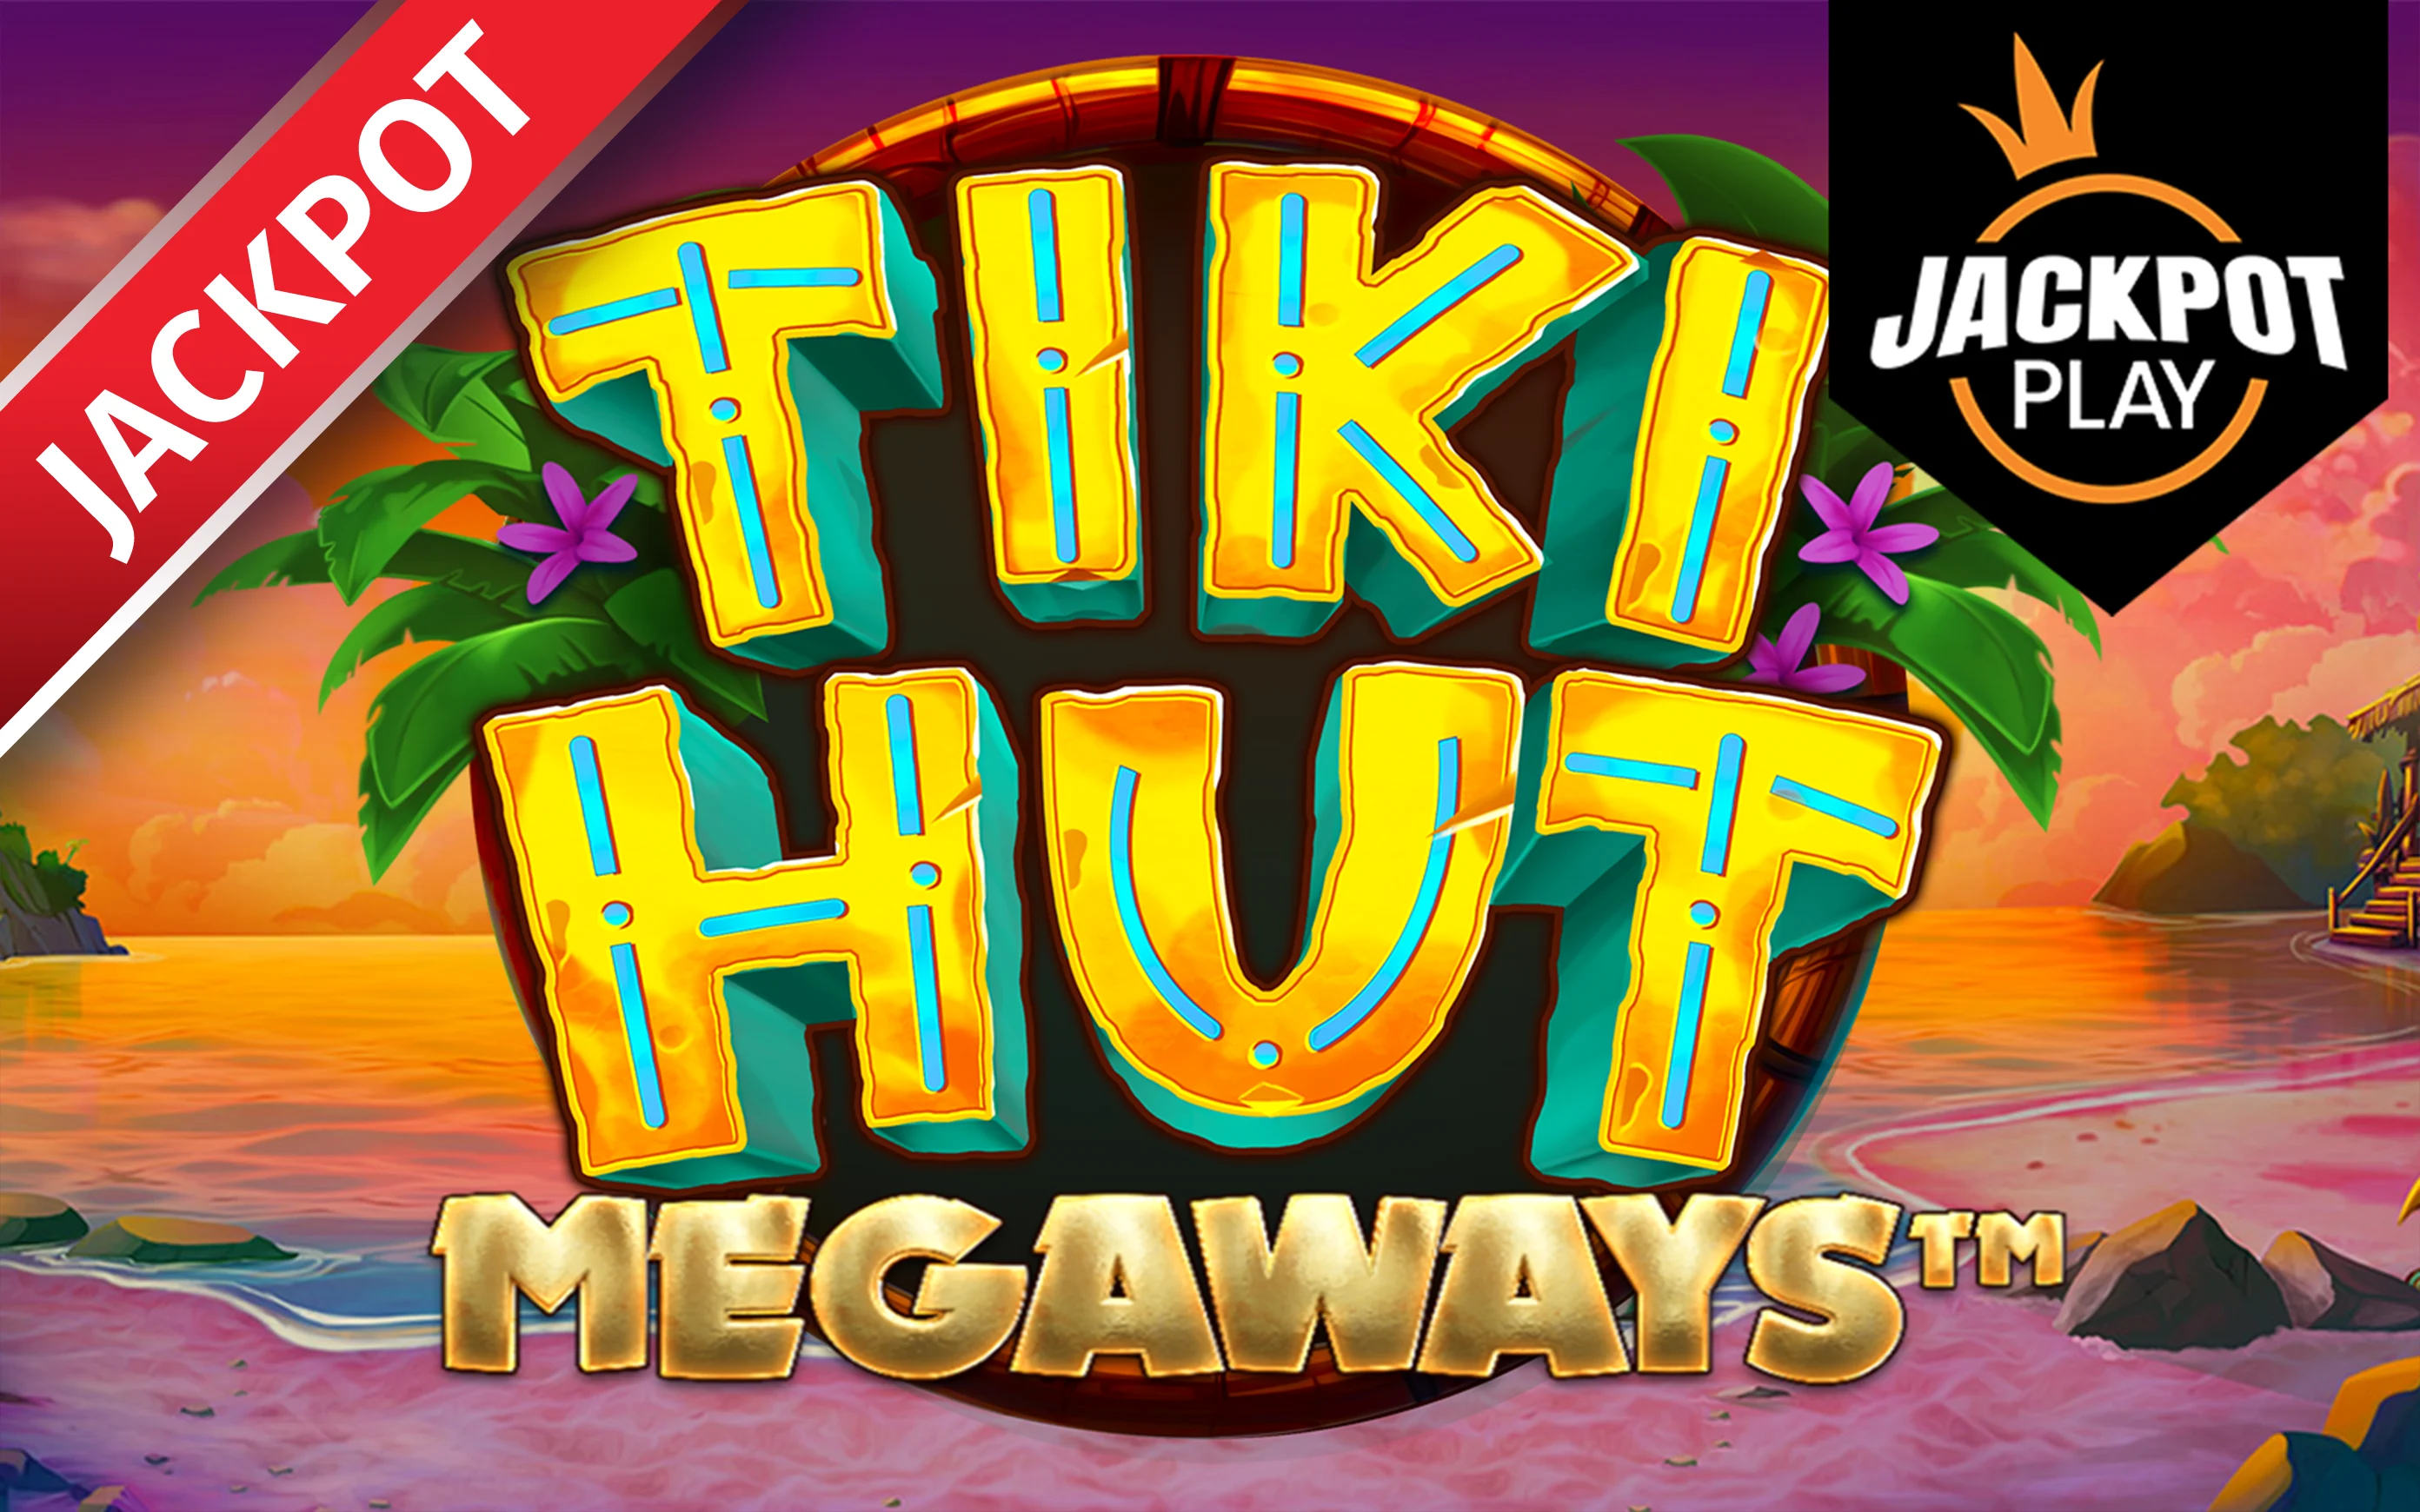 Chơi Tiki Hut Megaways Jackpot Play trên sòng bạc trực tuyến Starcasino.be